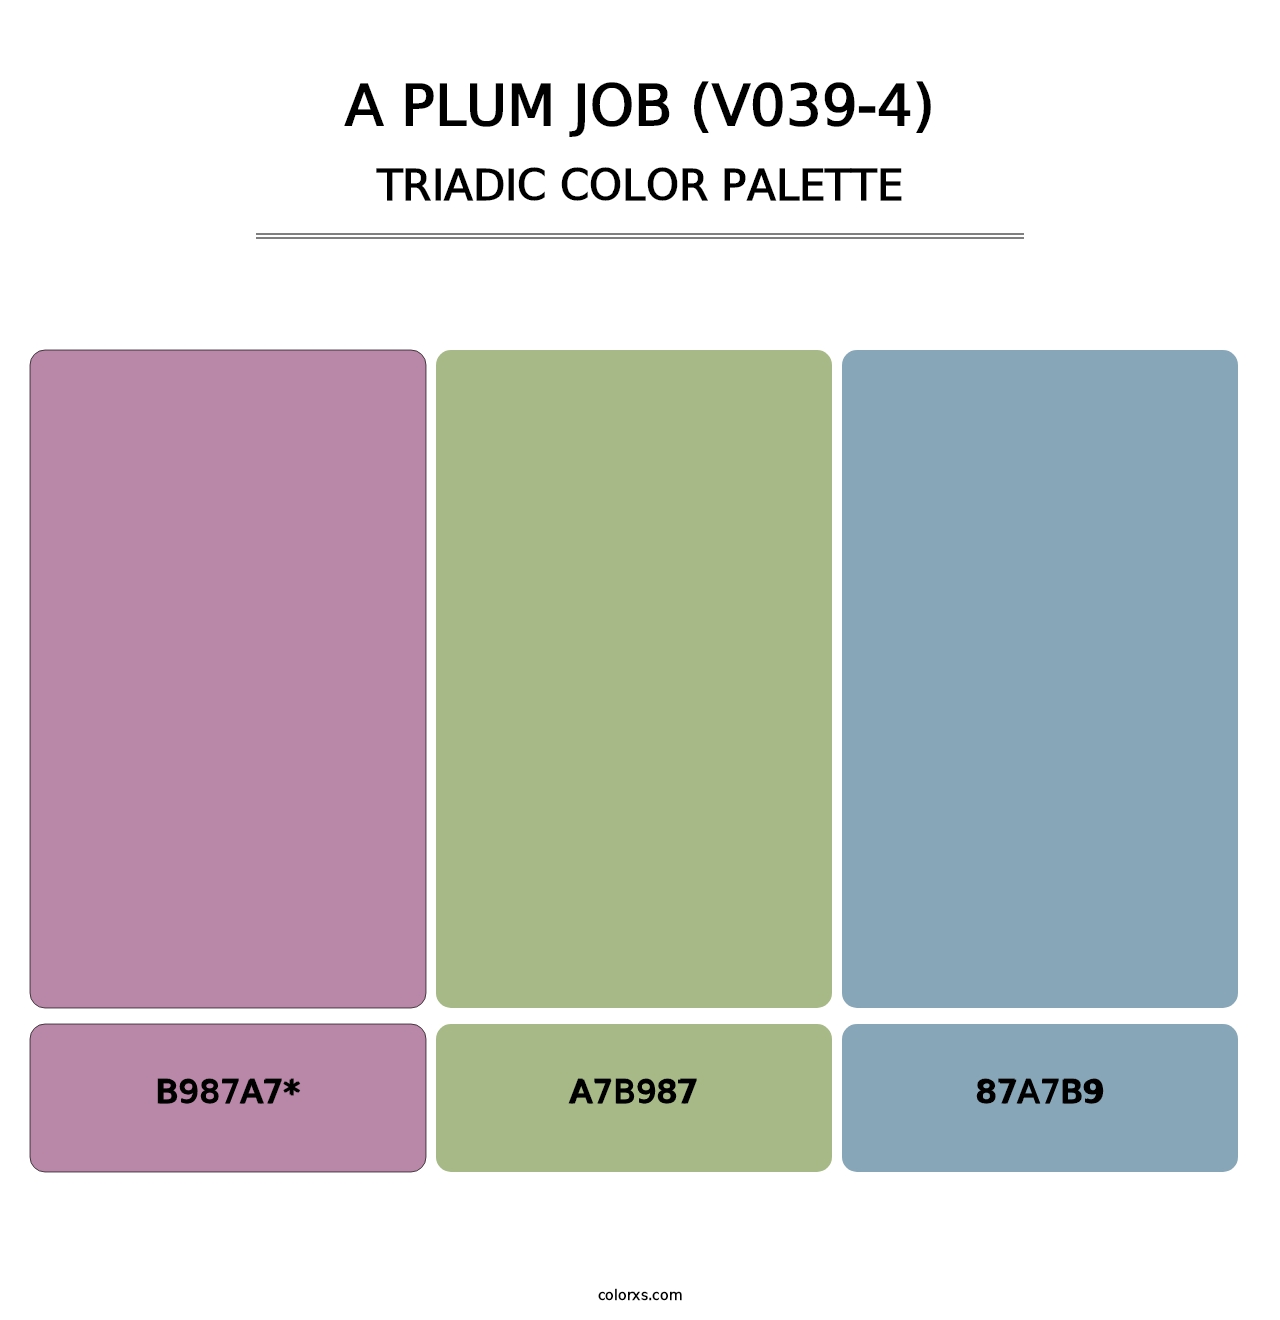 A Plum Job (V039-4) - Triadic Color Palette